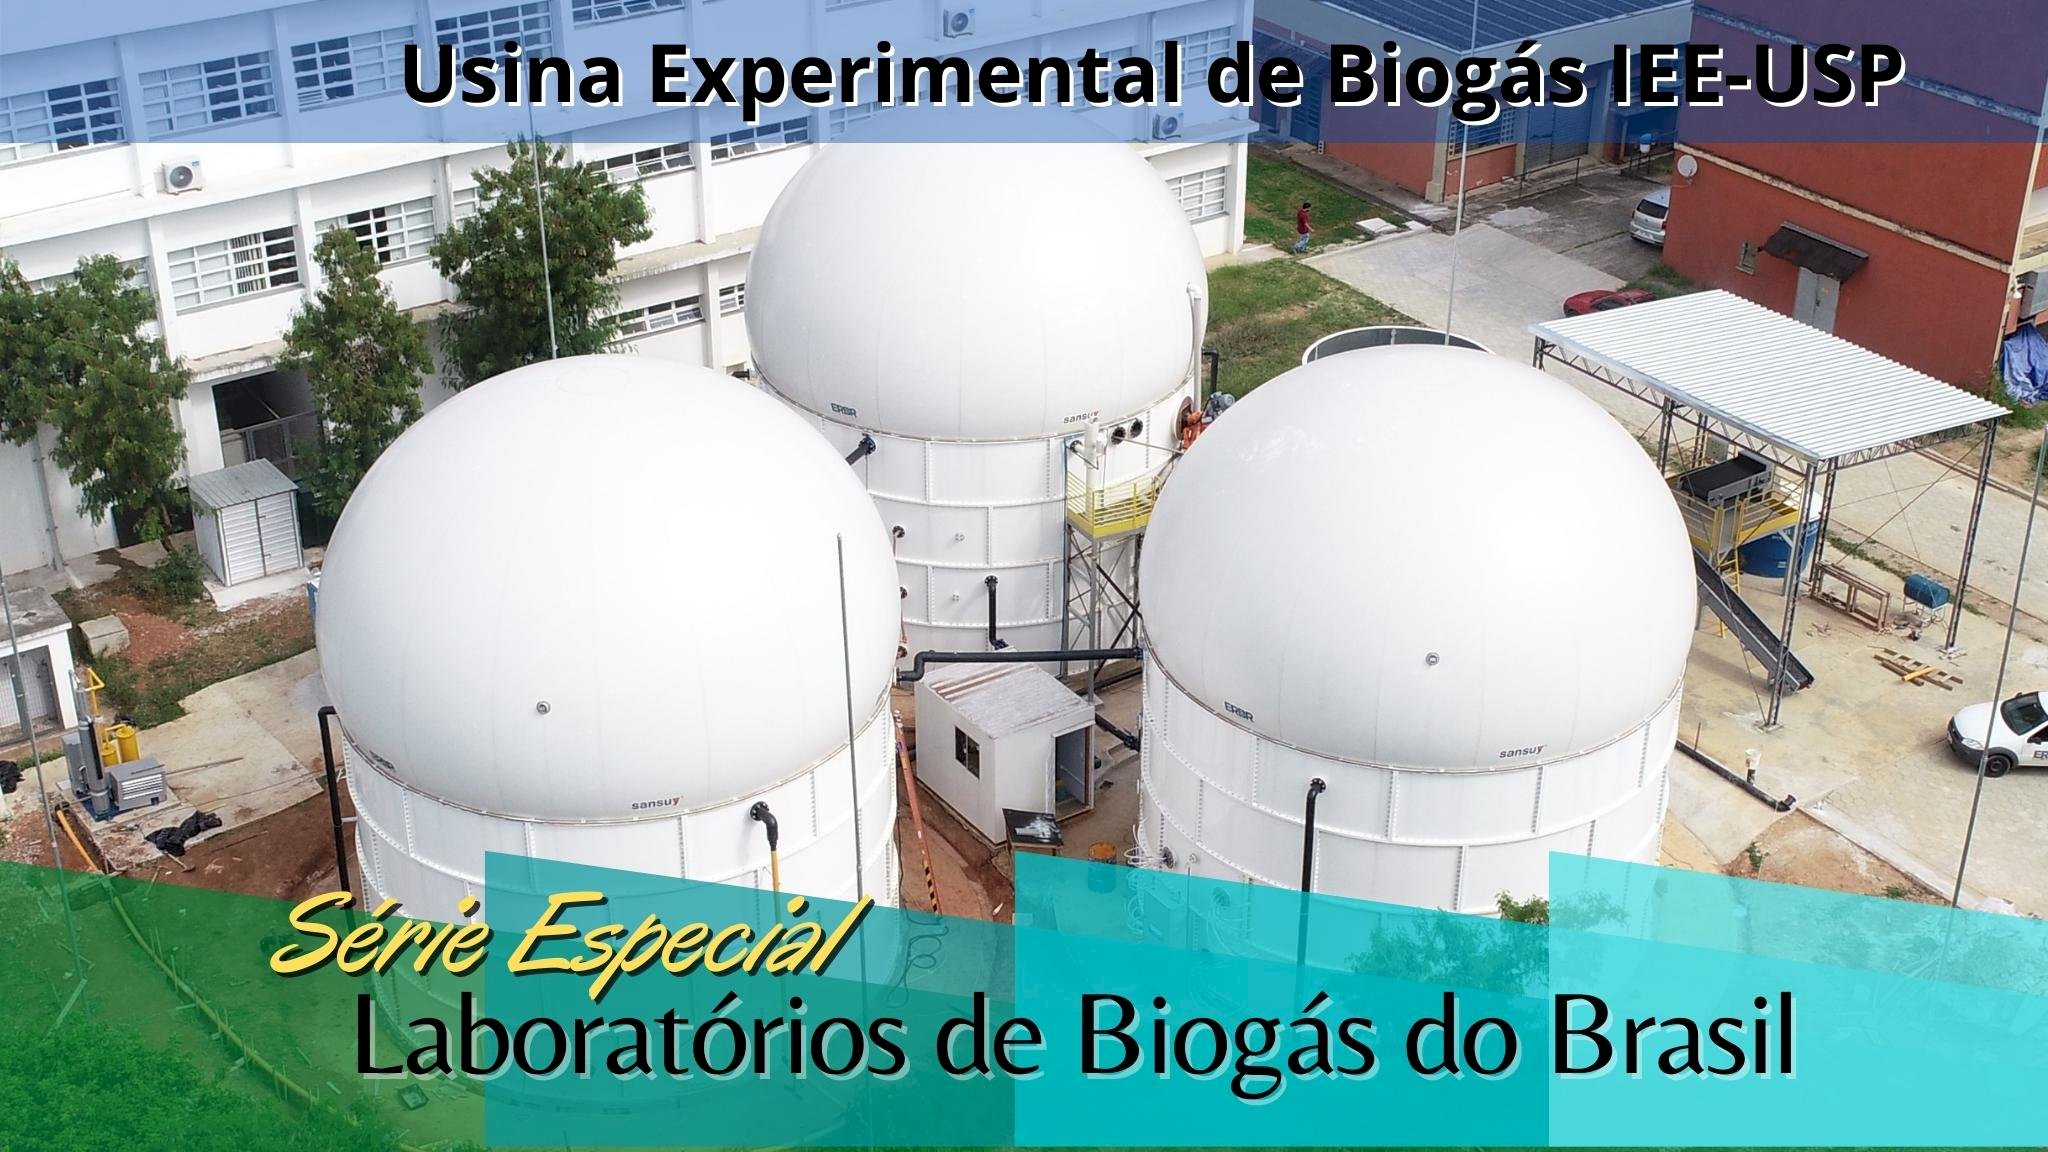 6º Episódio - Laboratório de Biogás - IEE USP em São Paulo/SP